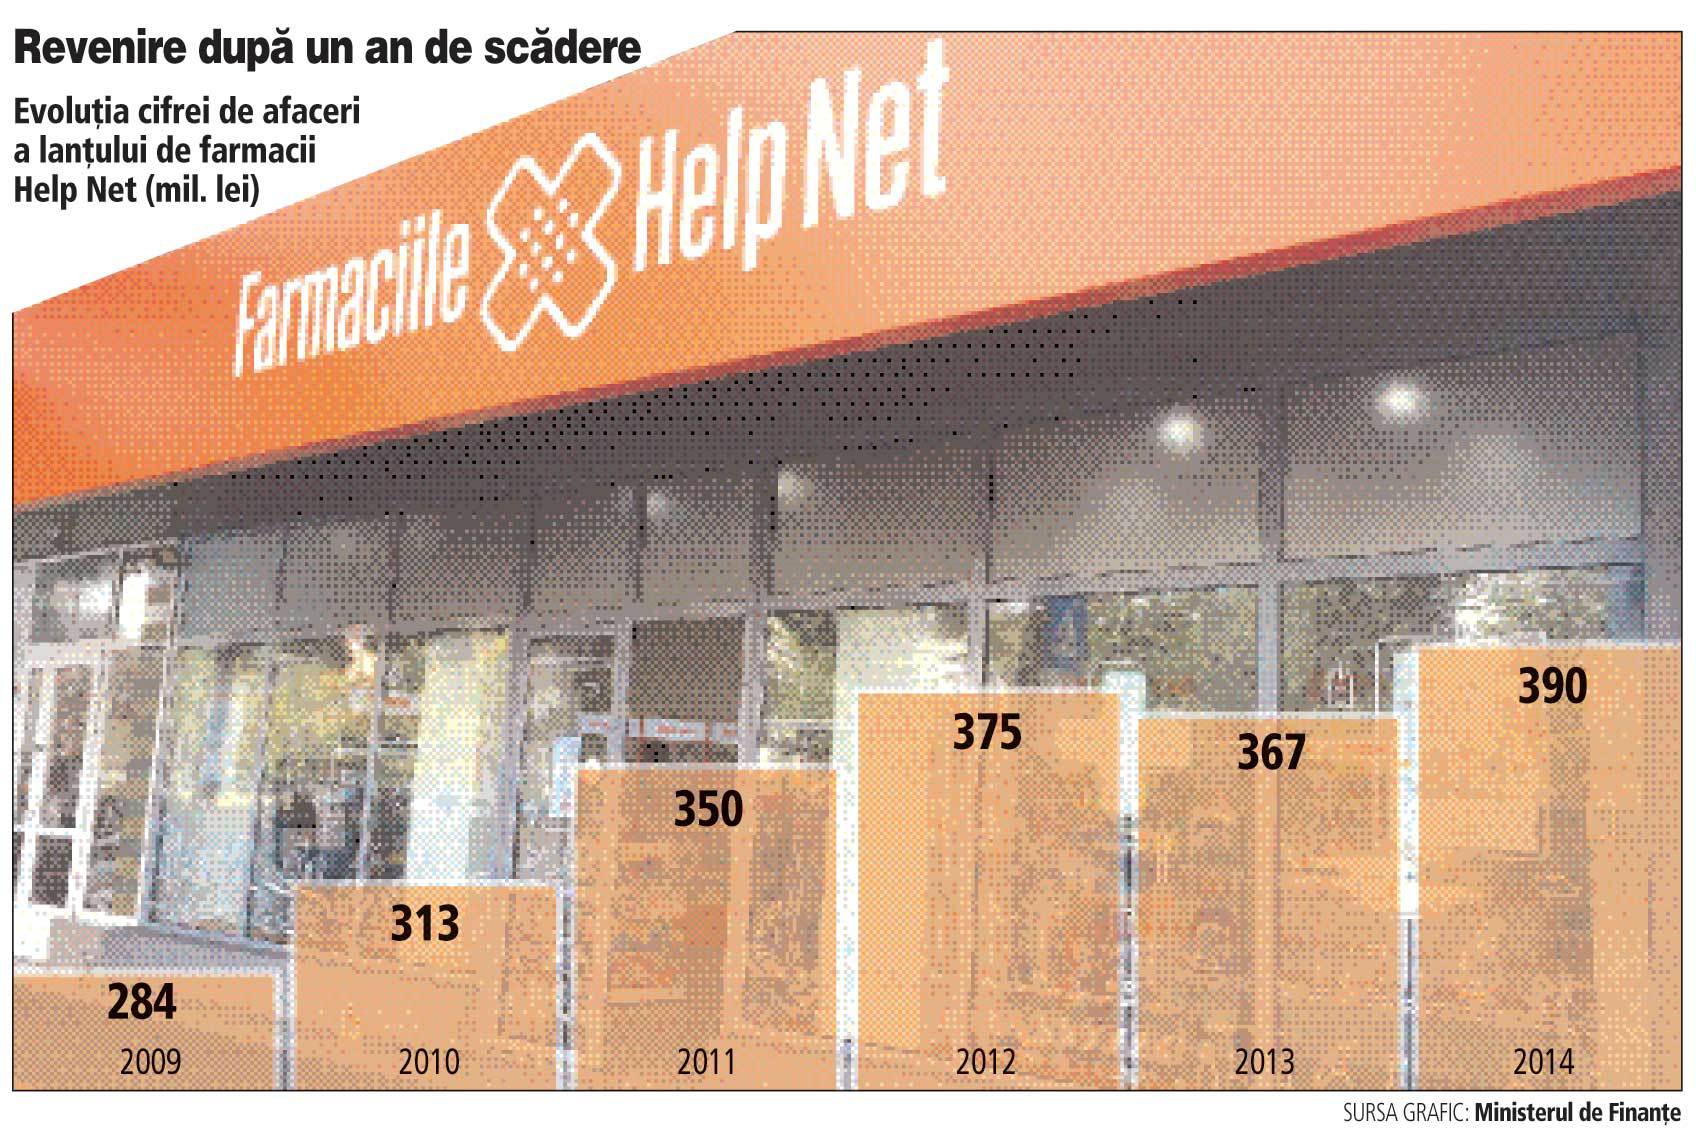 Help Net anunţă că va trece de pragul de 200 de farmacii după ce a terminat un rebranding de 1,5 milioane de euro